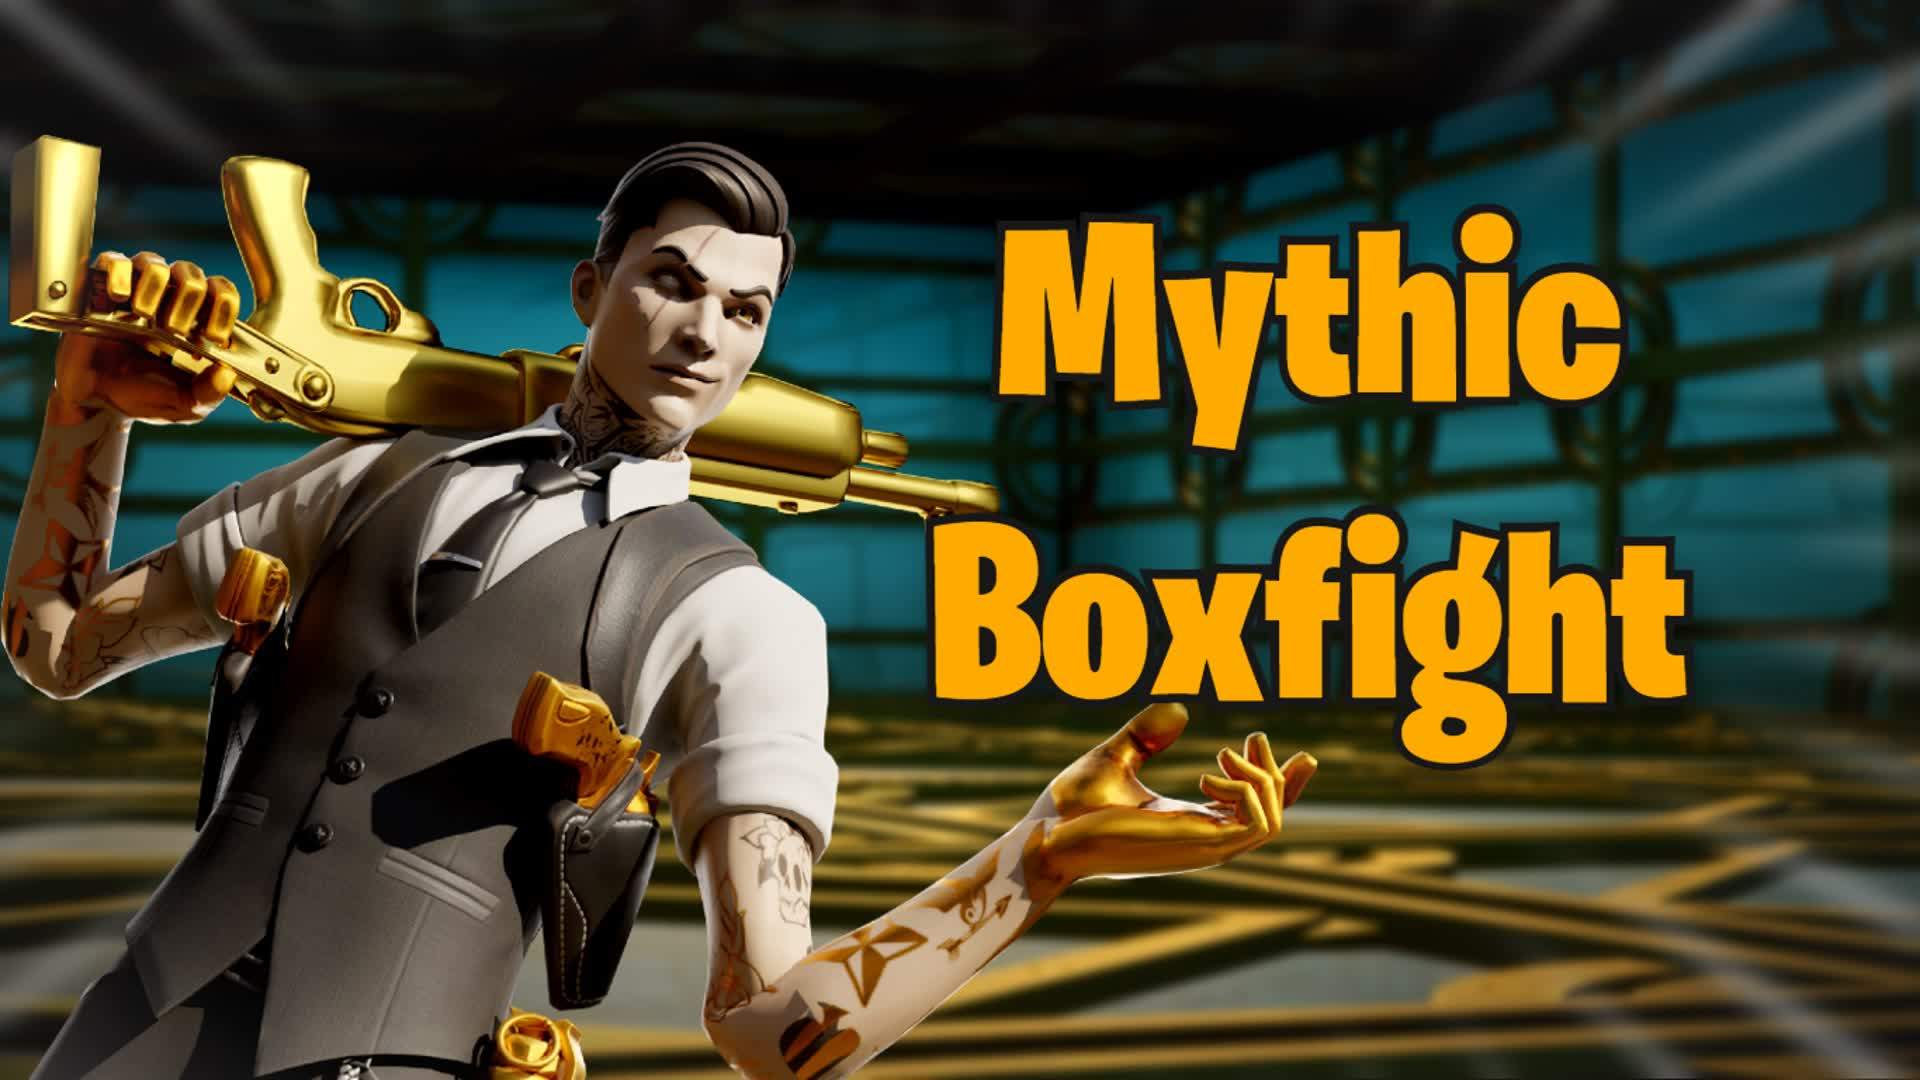 MYTHIC BOXFIGHT